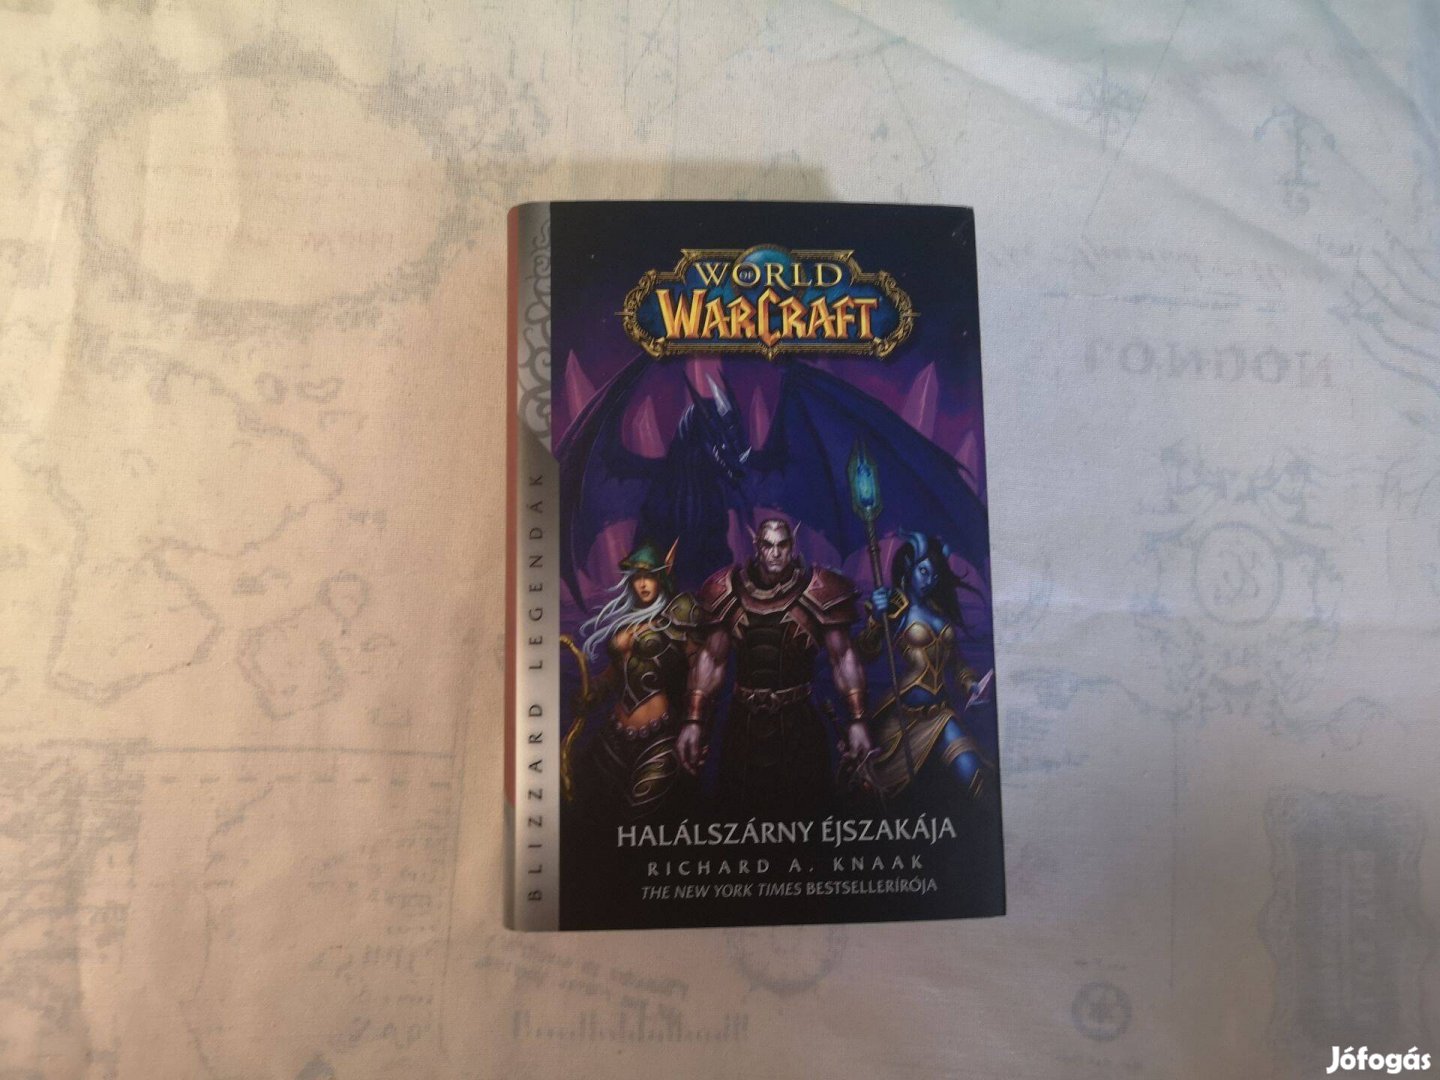 Richard A. Knaak - Halálszárny éjszakája (World of Warcraft)